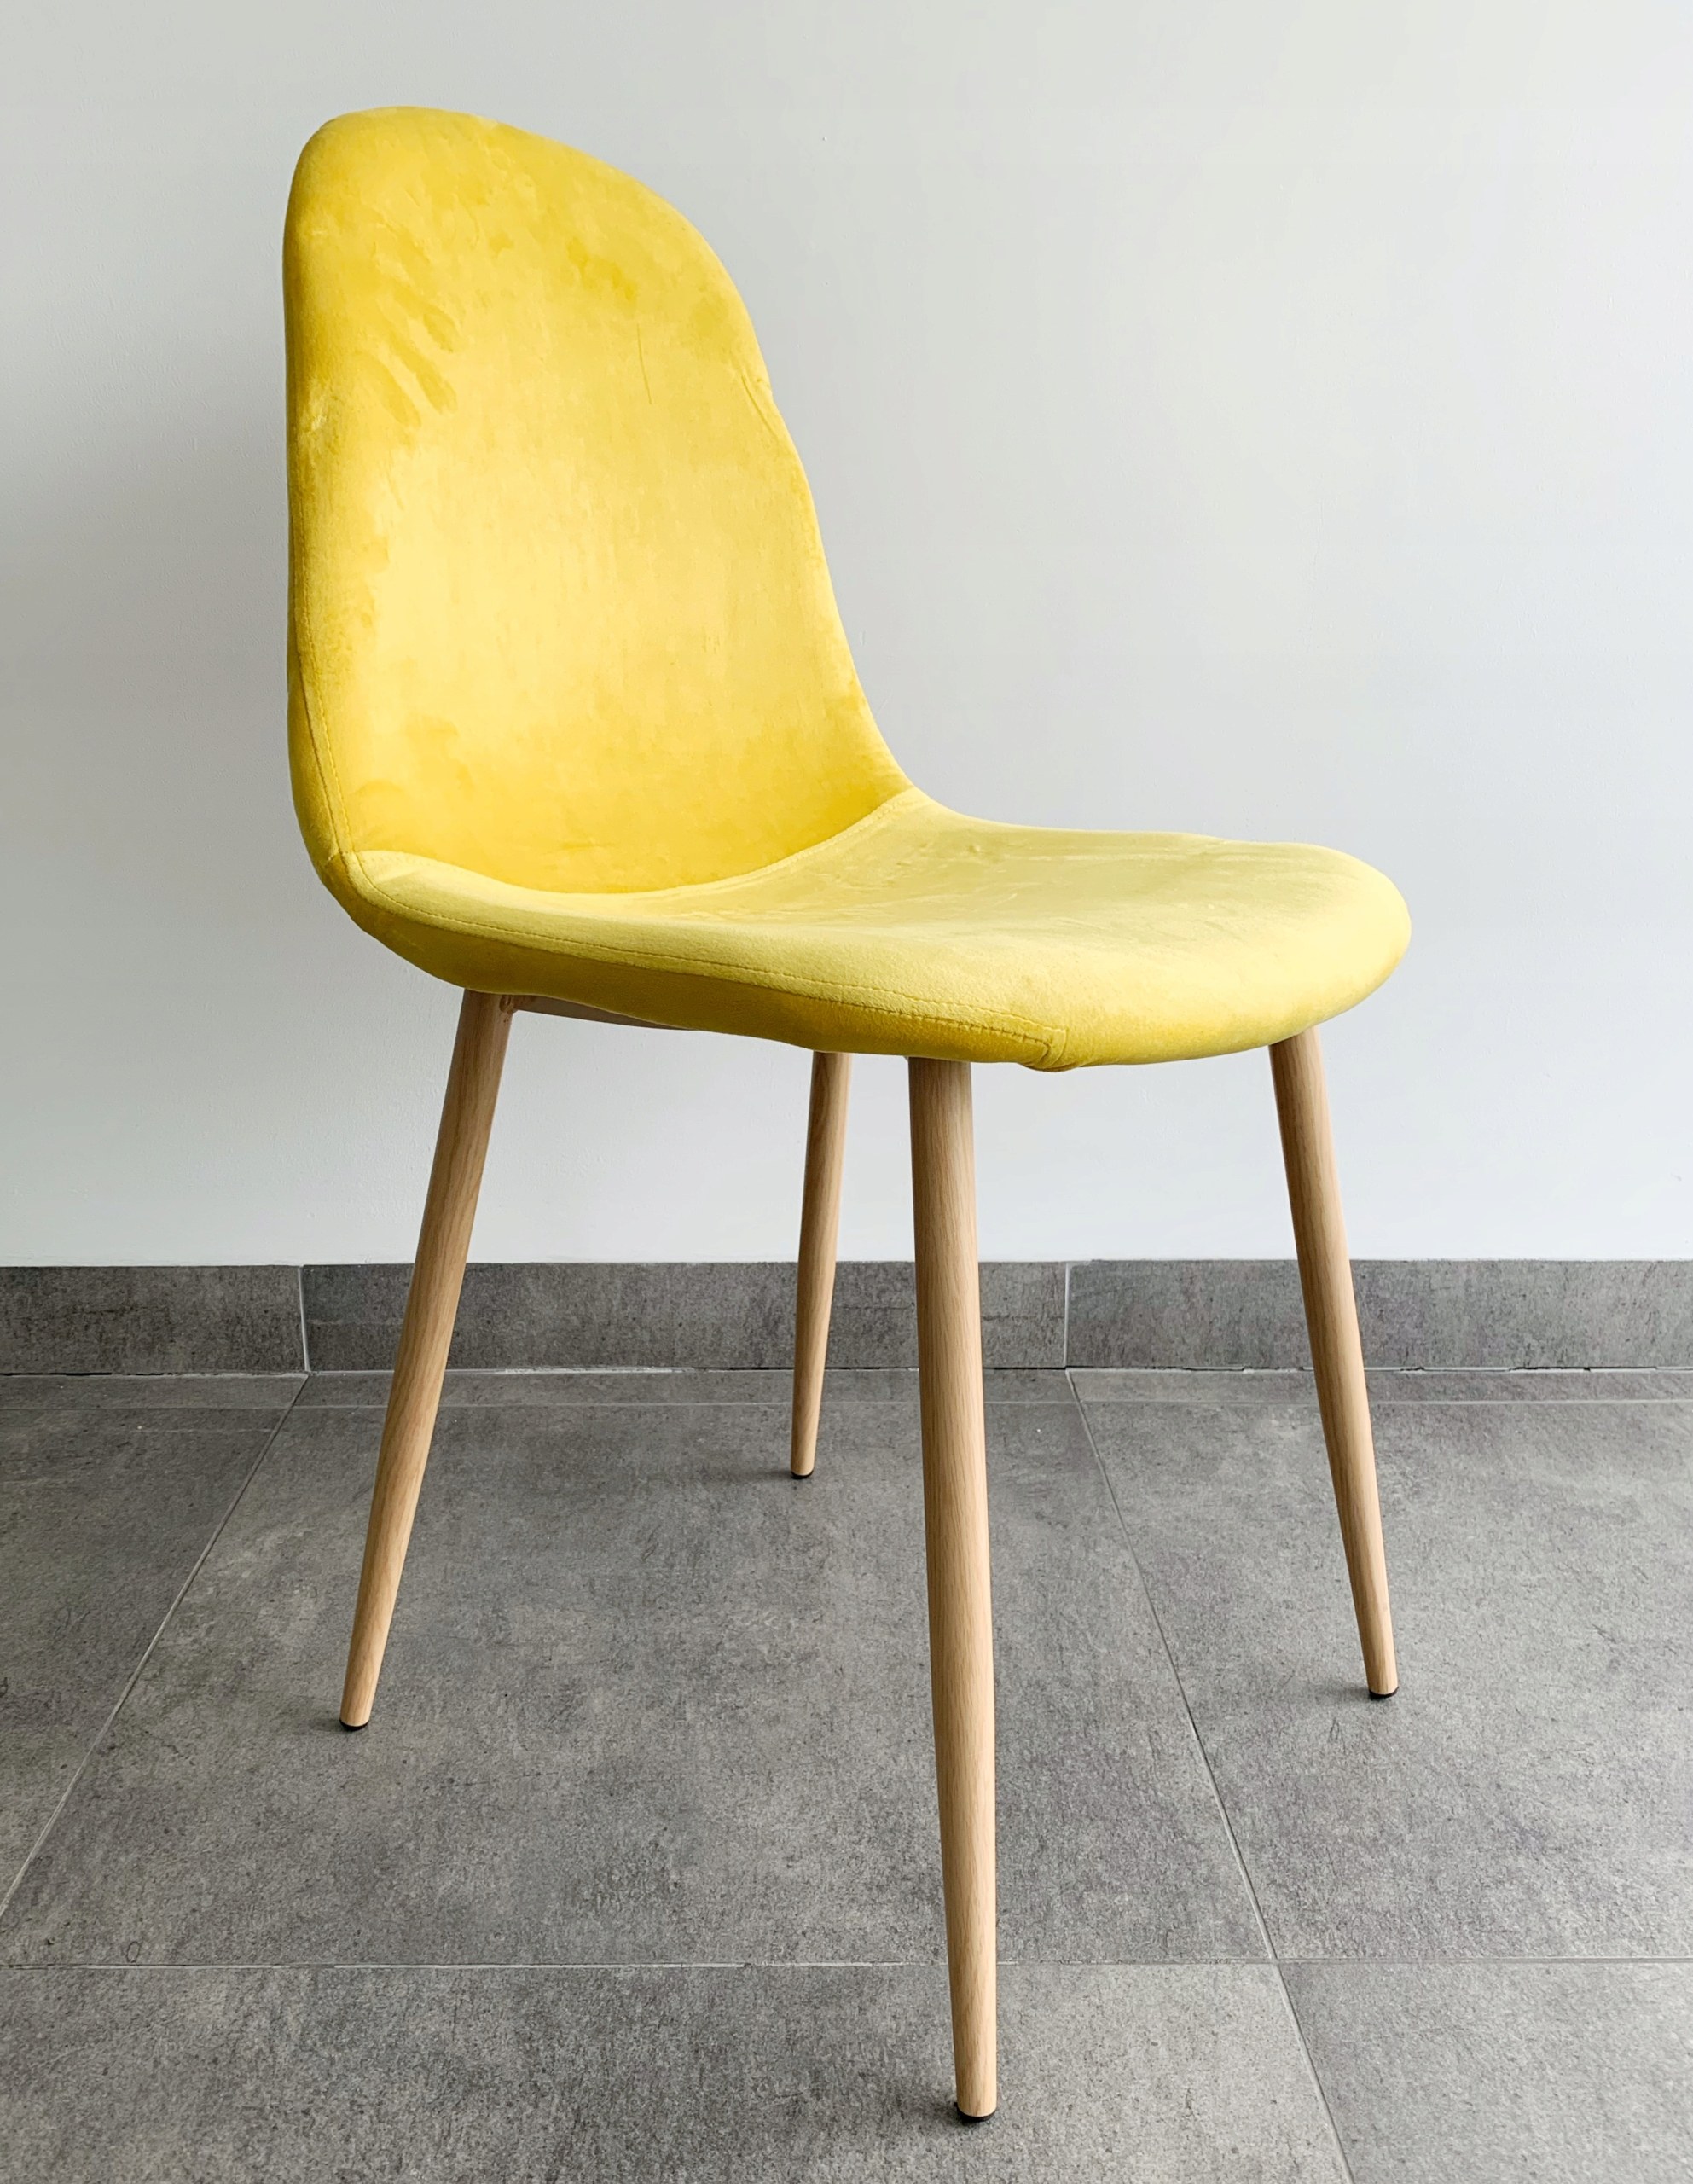 Yellow chair. Стул желтый мягкий. Желтый стул с деревянными ножками. Стулья для кухни желтые мягкие. Кухня с желтыми стульями.